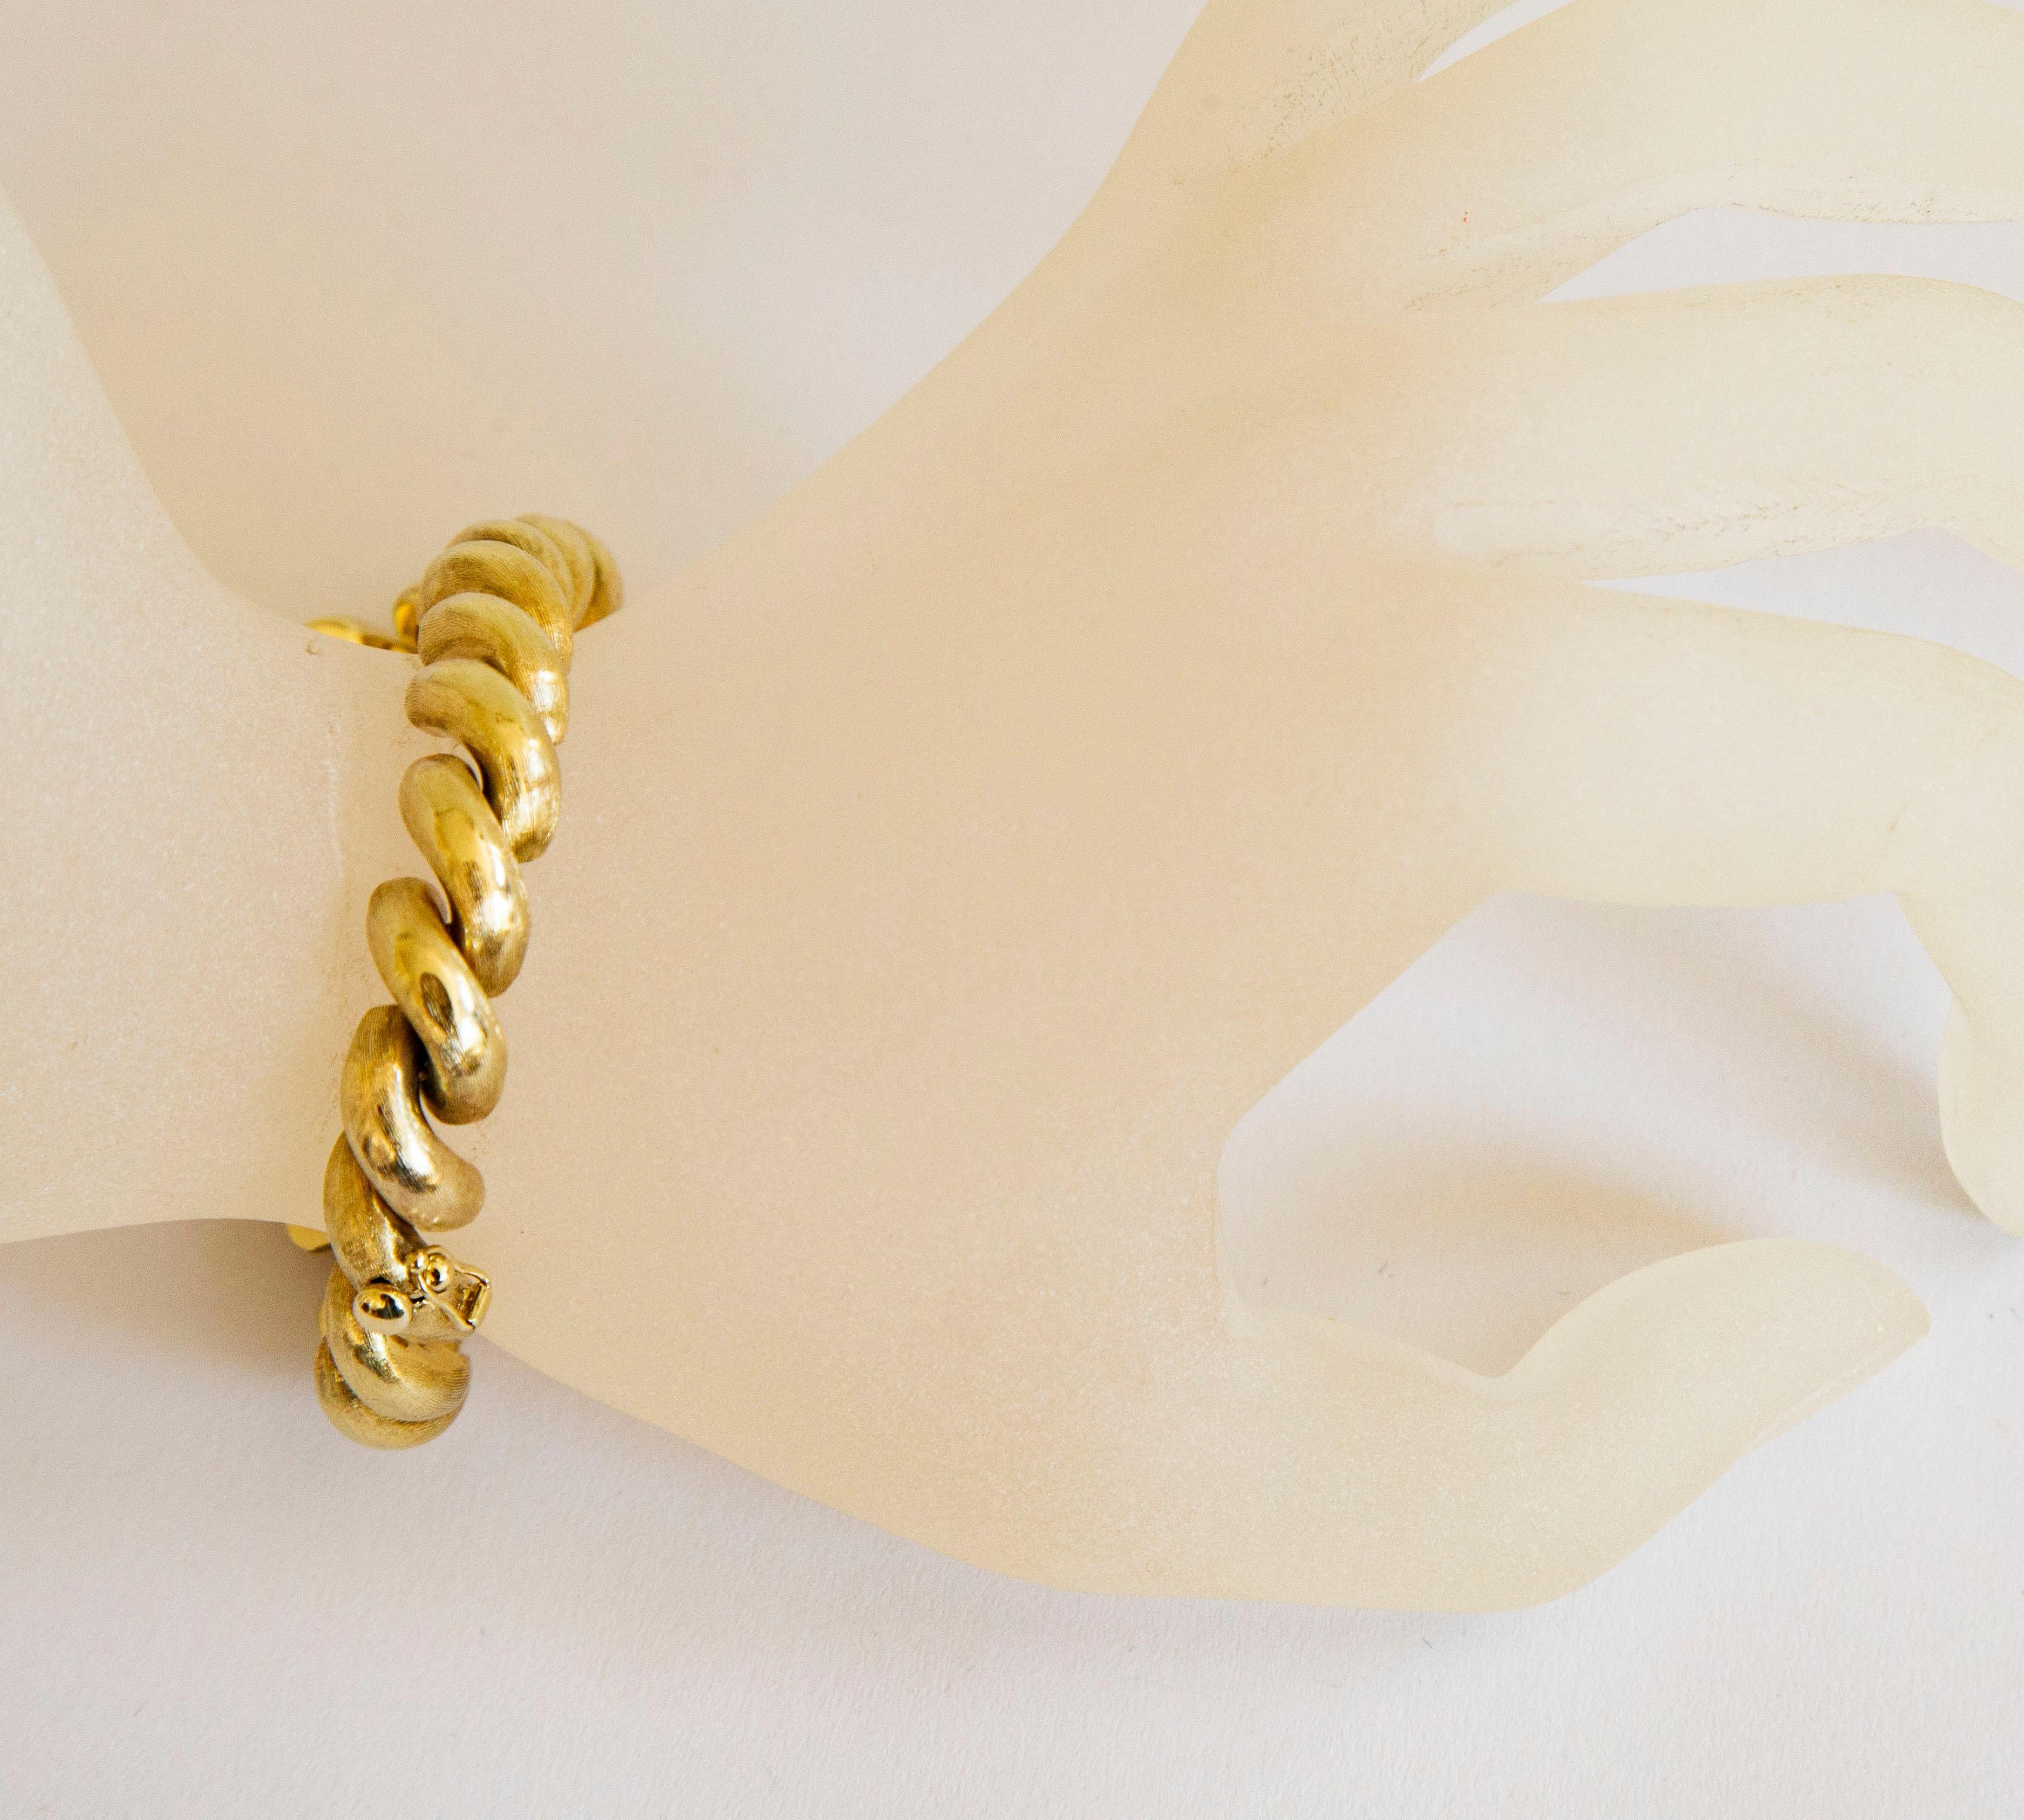 Un bracelet vintage en or jaune 14 carats/585 demi-maille San Marco MarCo avec finition mate et texturée. Il est doté d'un fermoir à insert et d'une serrure de sécurité pour une fermeture sûre.
Le bracelet a été testé et sa teneur en or est de